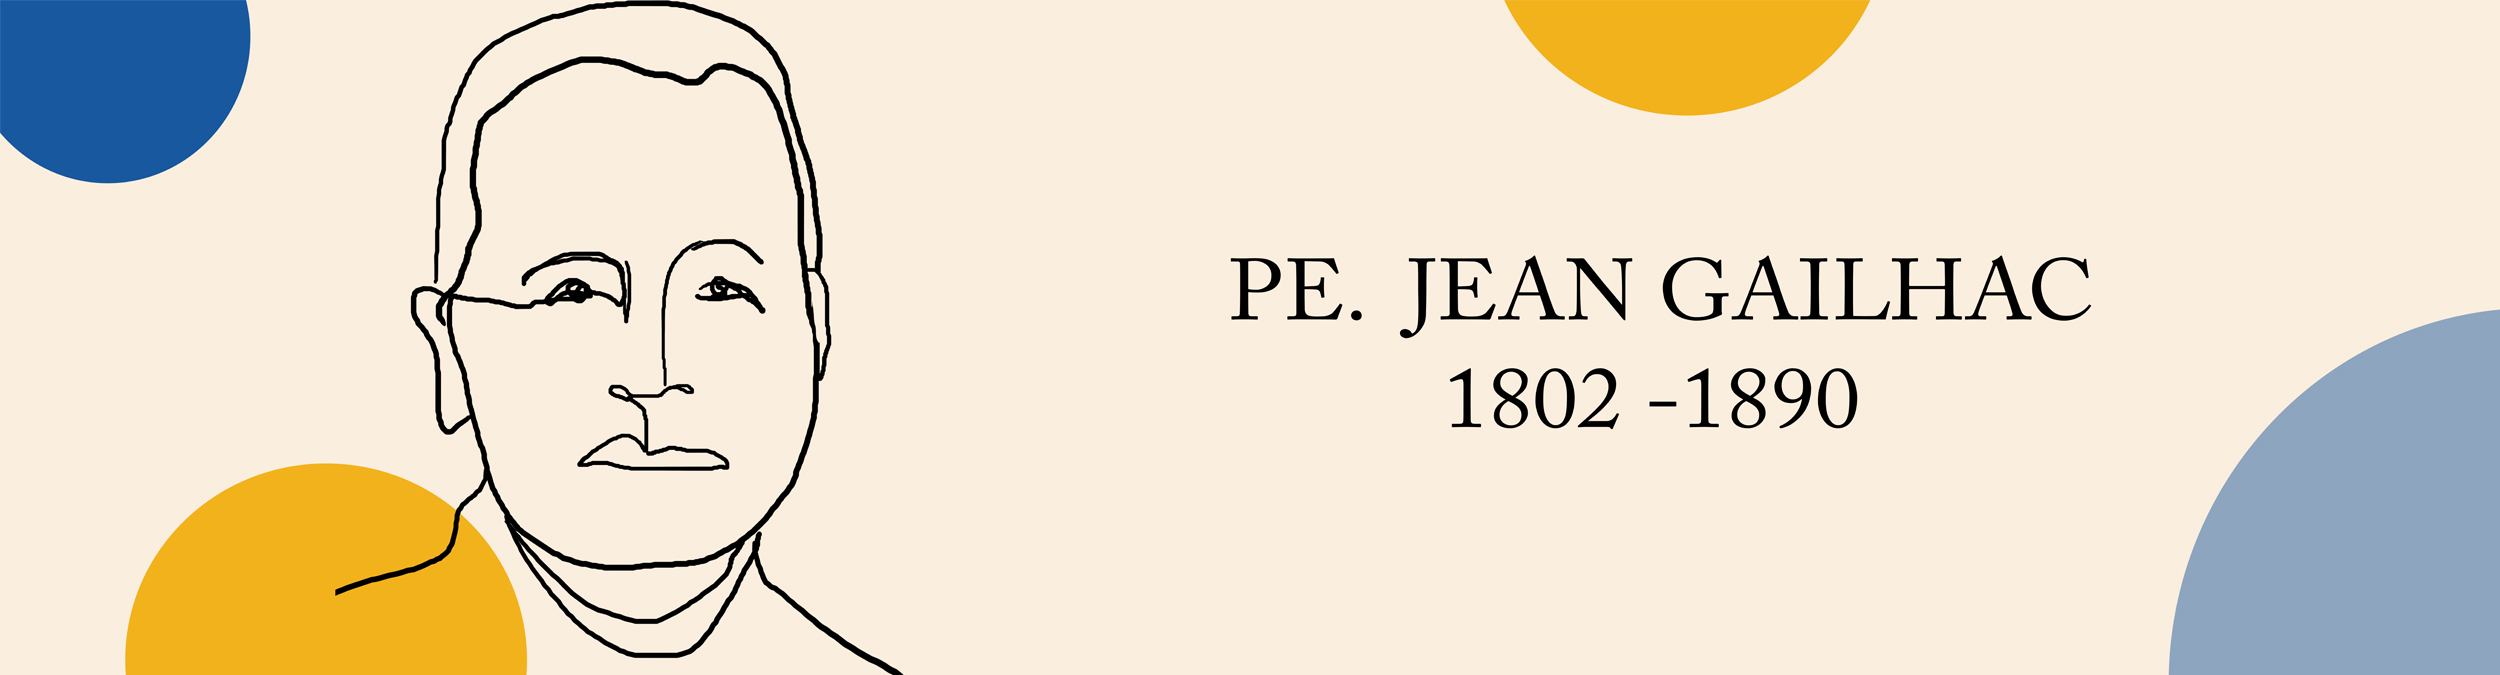 Aniversário do nascimento do Venerável Pe. Jean Gailhac